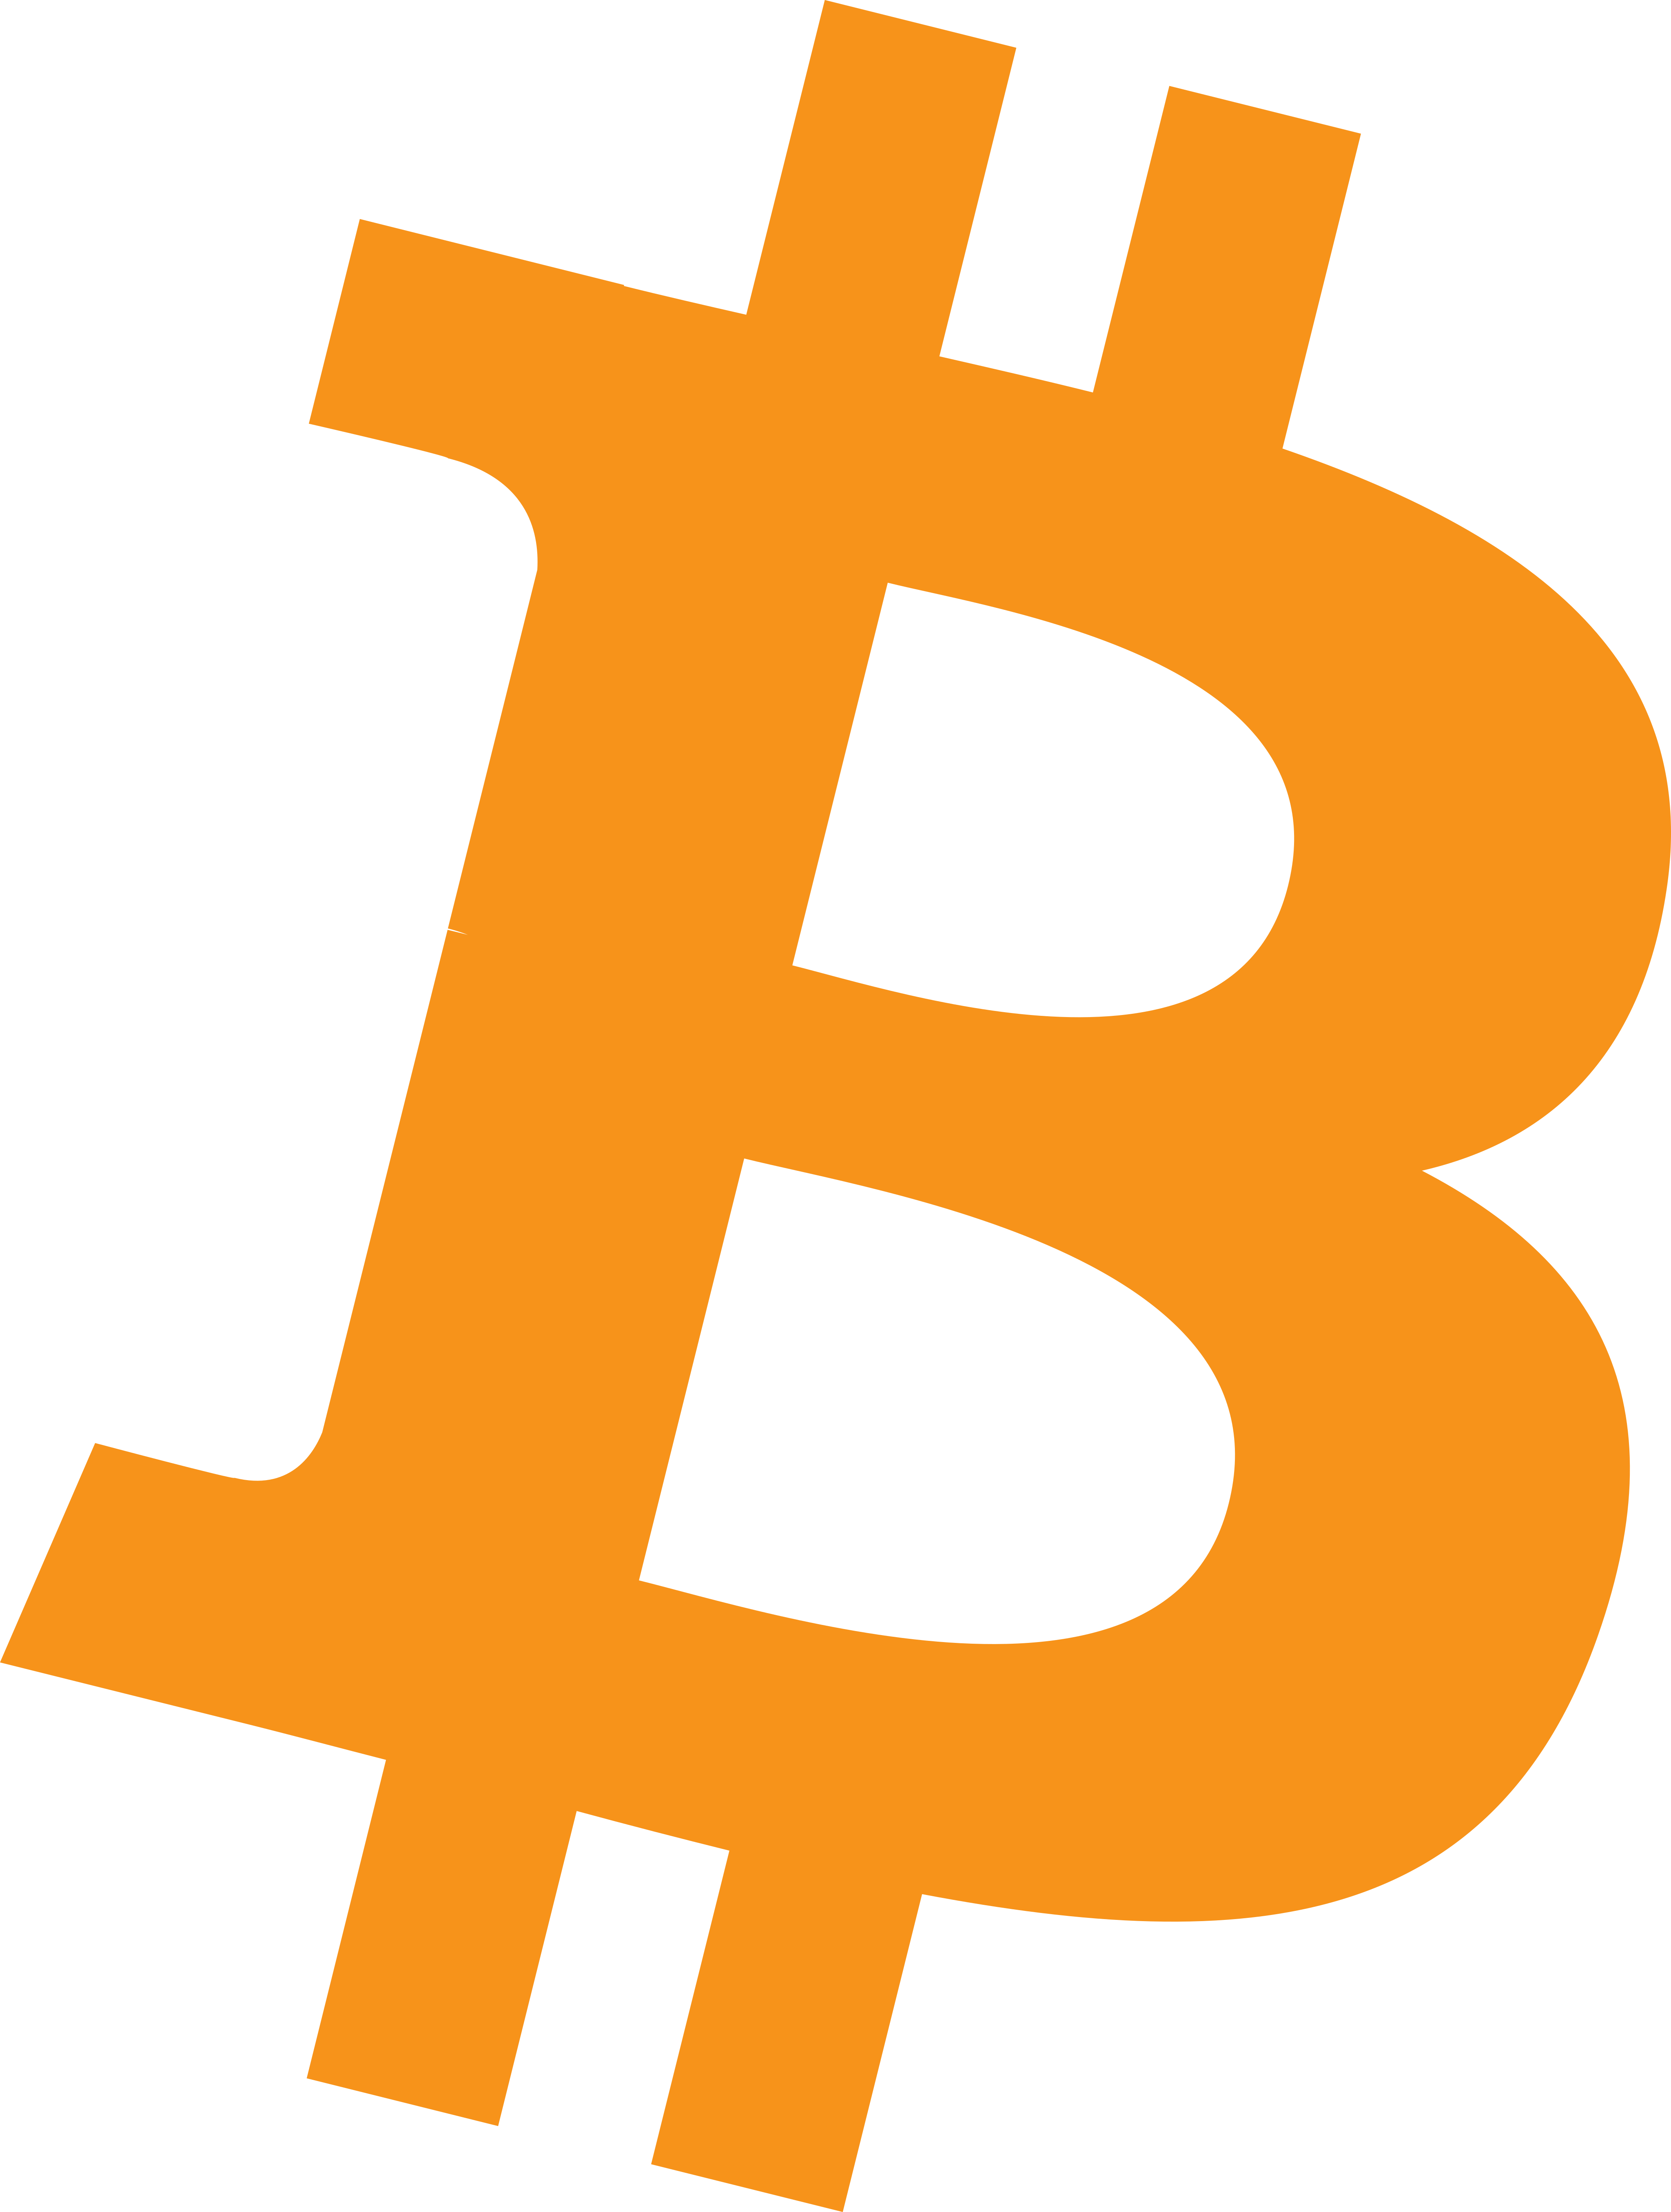 Bitcoin Logo PNG Image HD